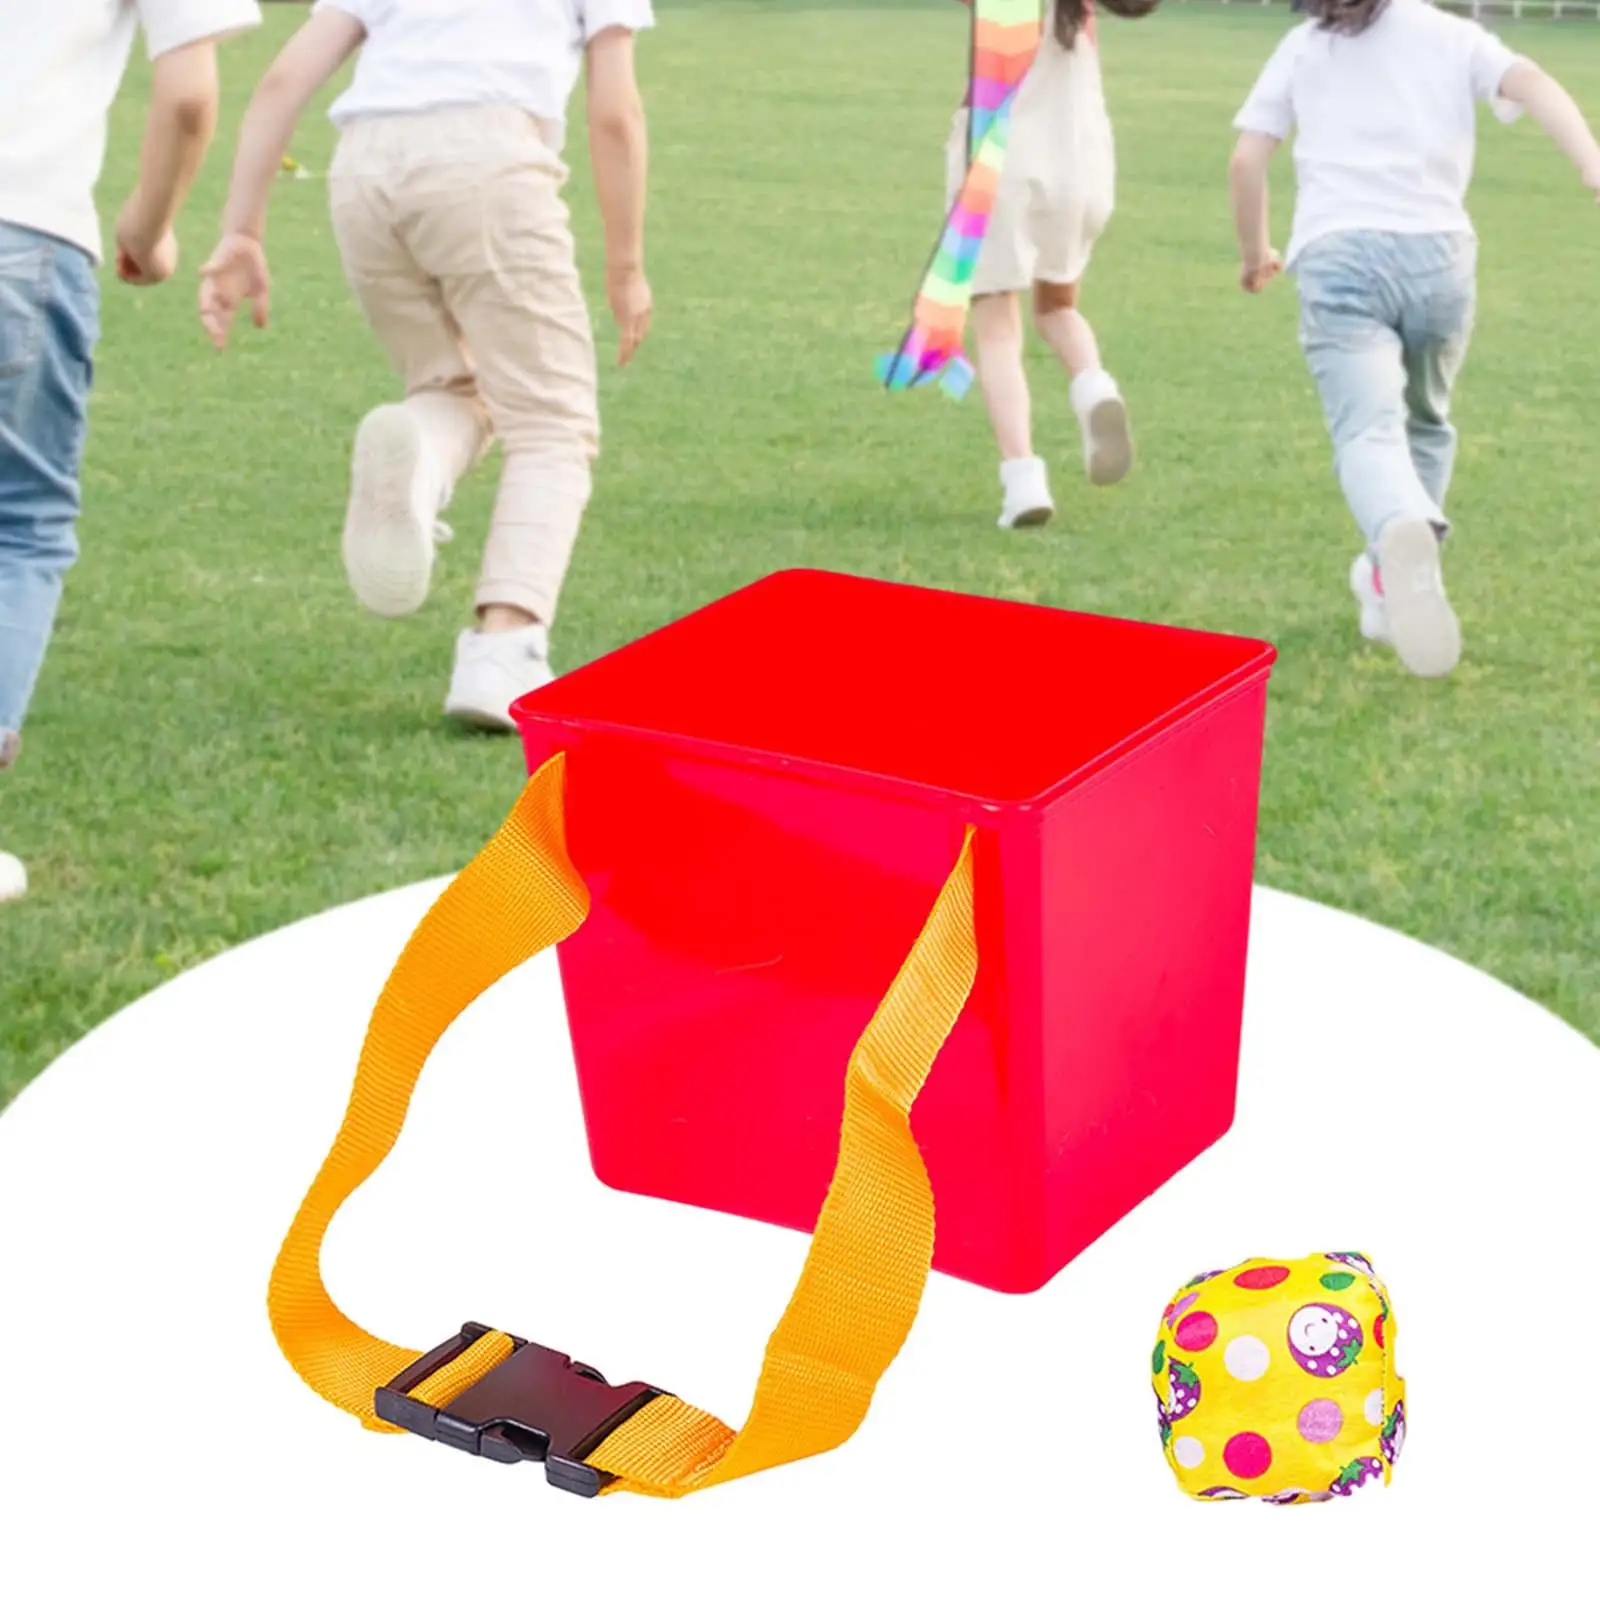 Throw Sandbag Sports Toss Game Indoor and Outdoor Game Kids Fitness Equipment for Games Kindergarten Backyard School Party